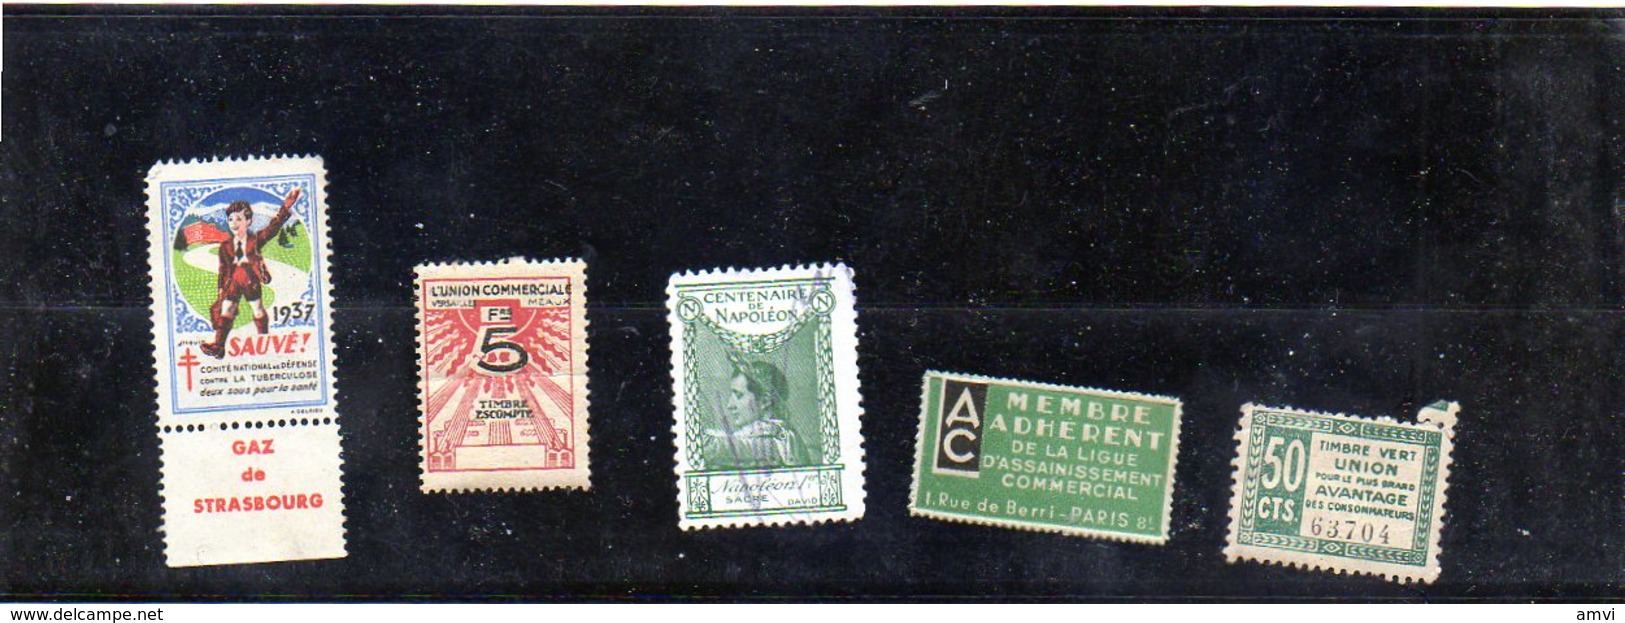 3876 - 5 Vignettes Tuberculose  1937  - Ligue Assainissement - Union Commerciale Plié Centenaire Napoleon Timbre Vert - Vignettes De Fantaisie